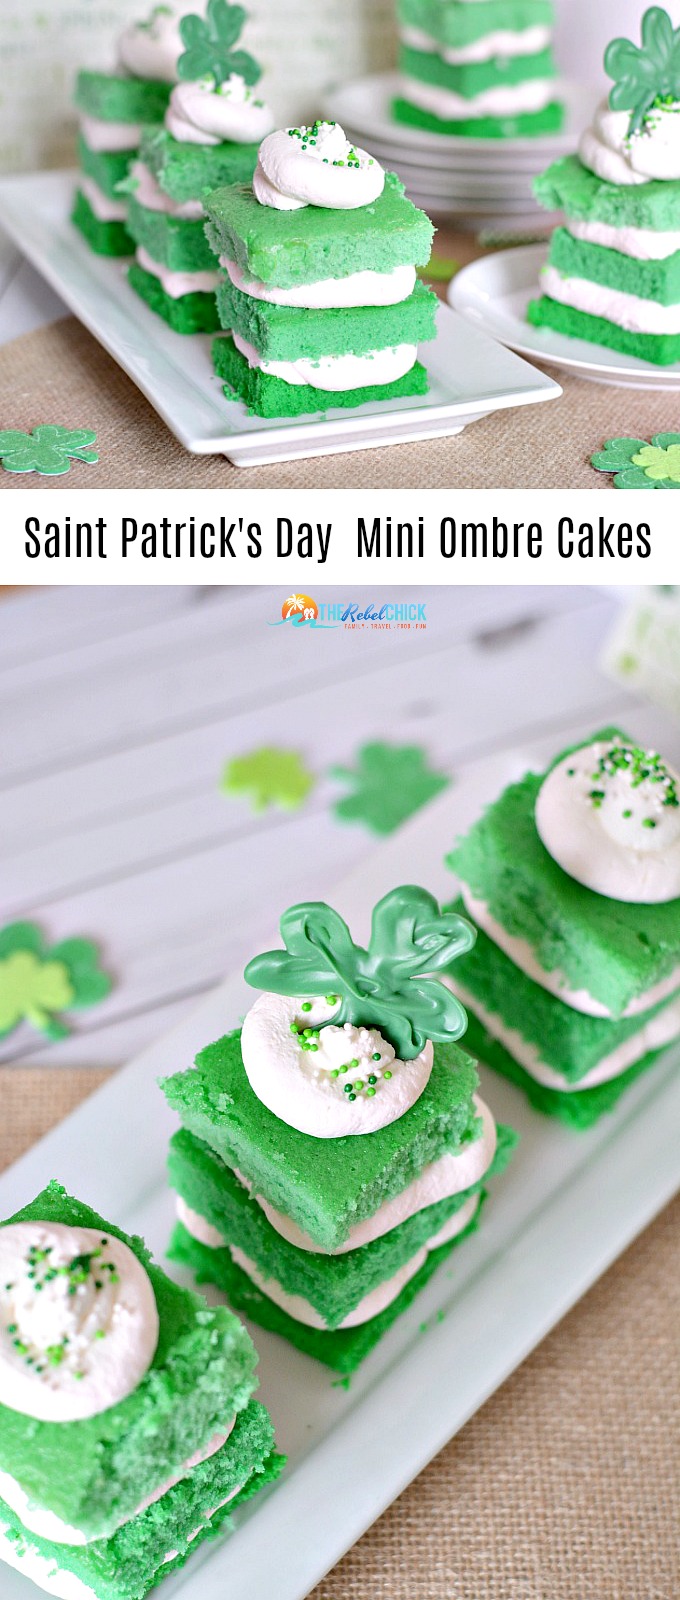 Saint Patrick's Day Mini Ombre Cake Recipe